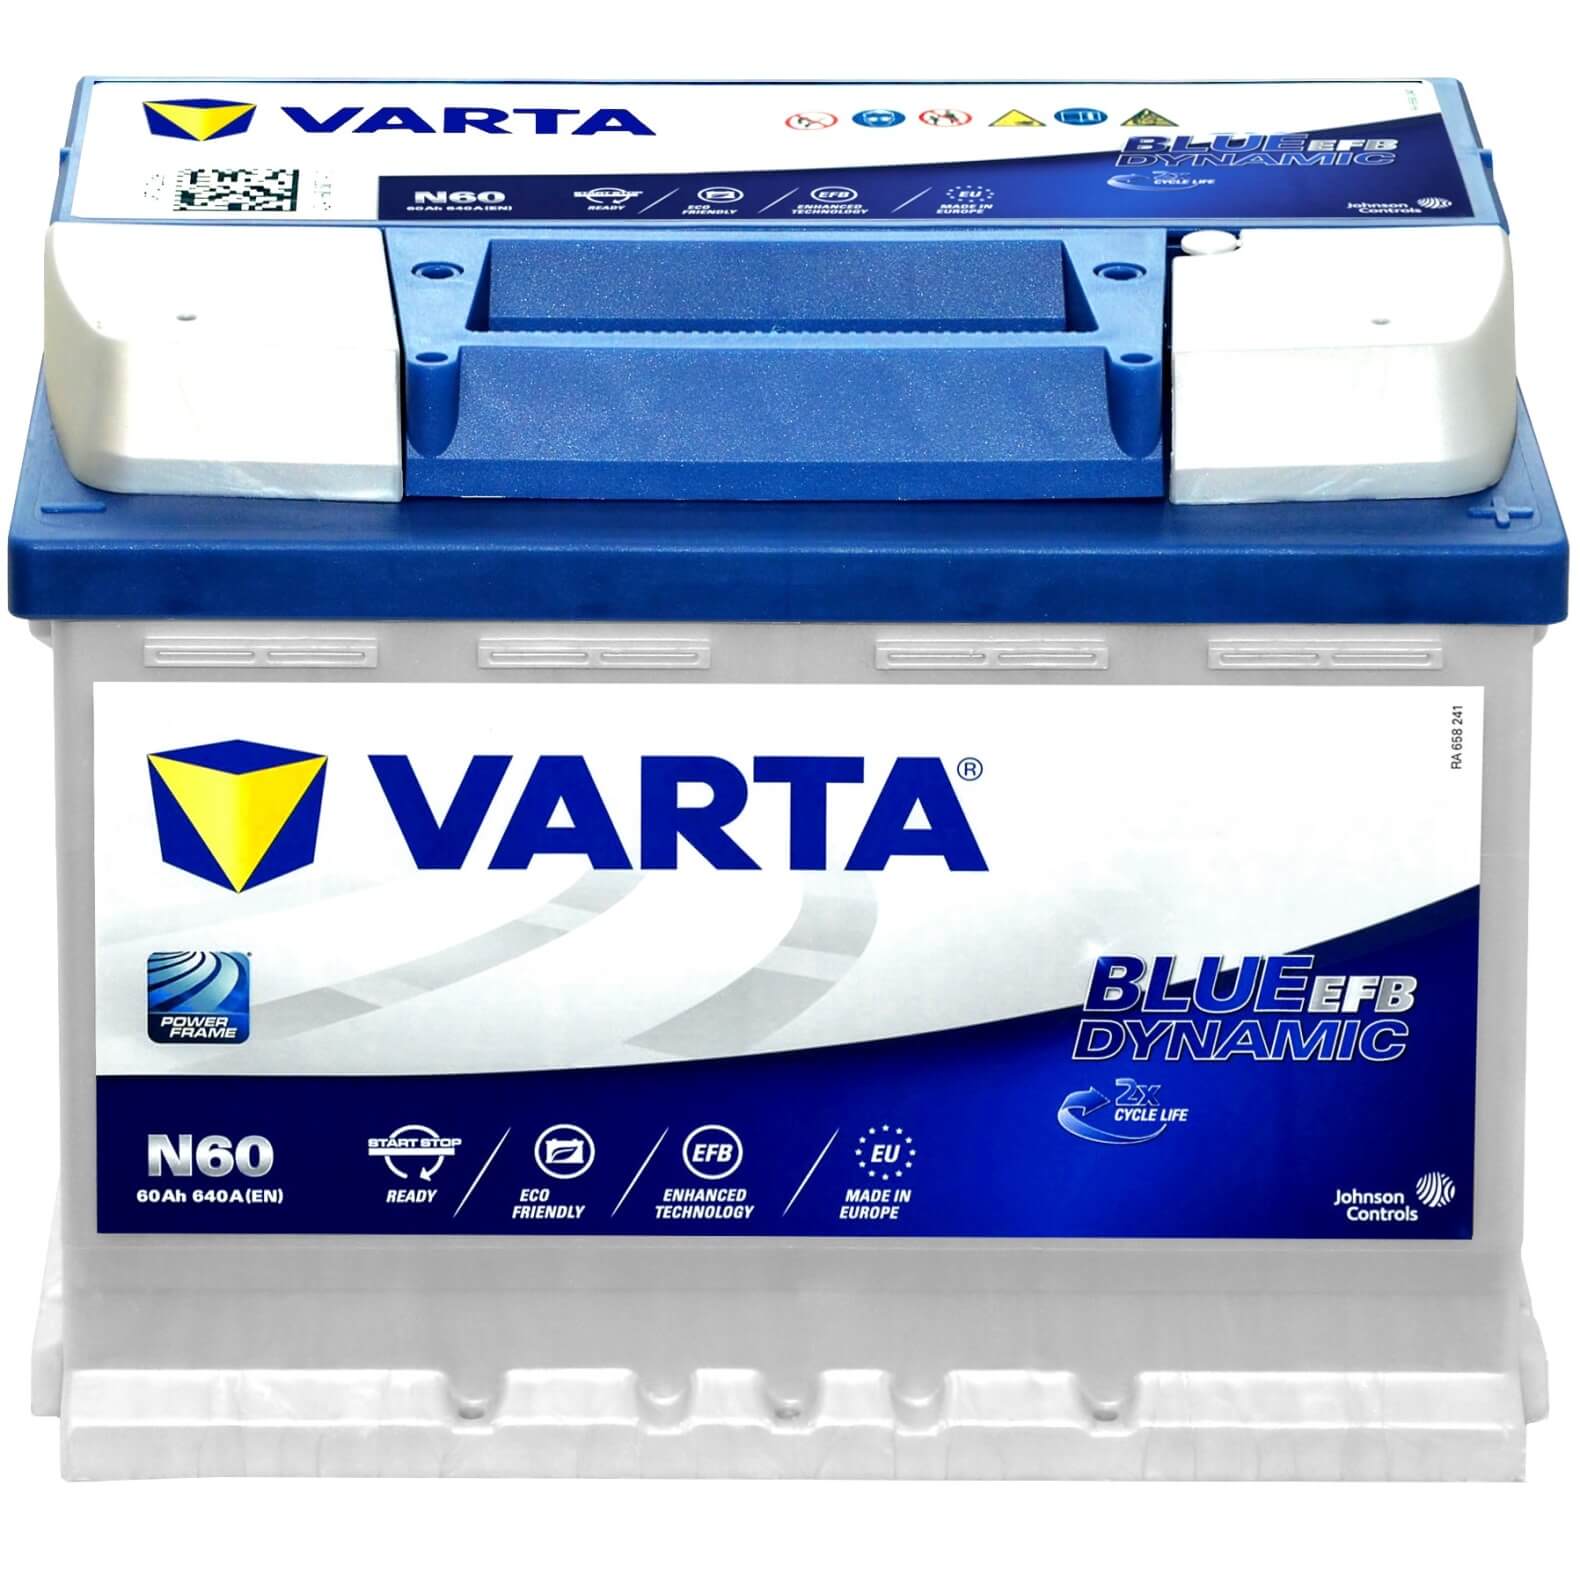 Batterie VARTA LFD60 - 60Ah 560AEN